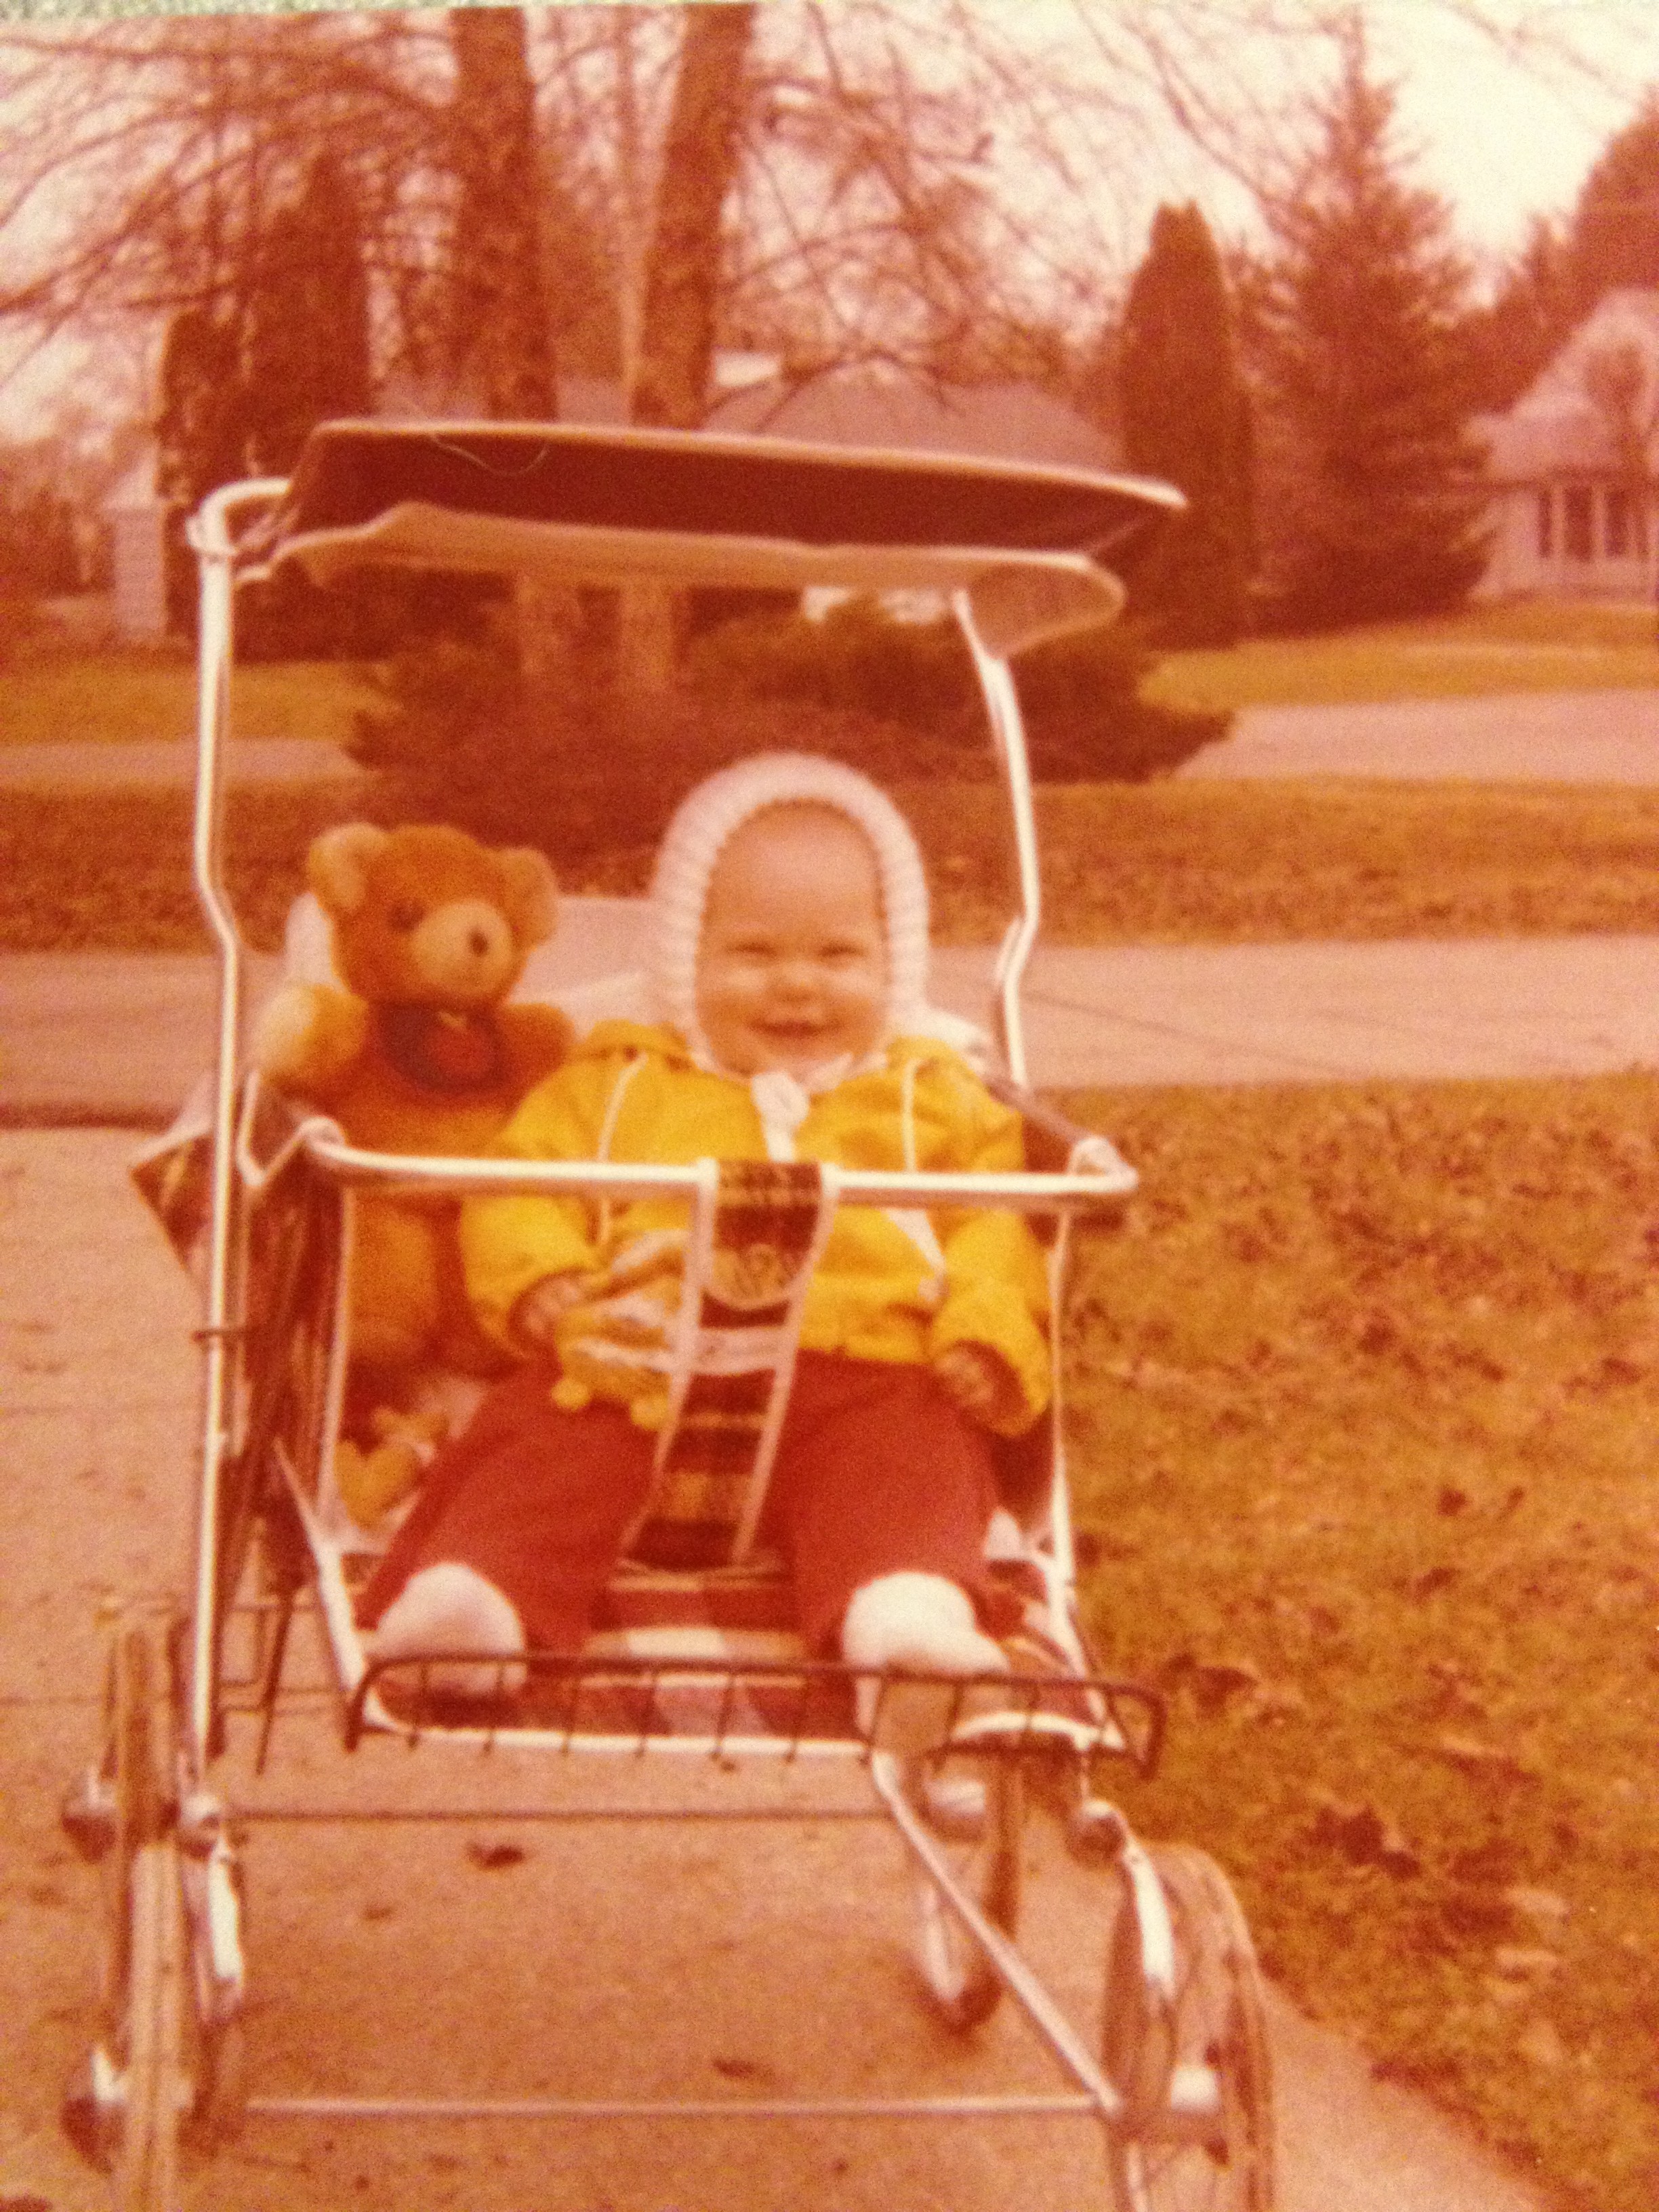 1970s baby stroller